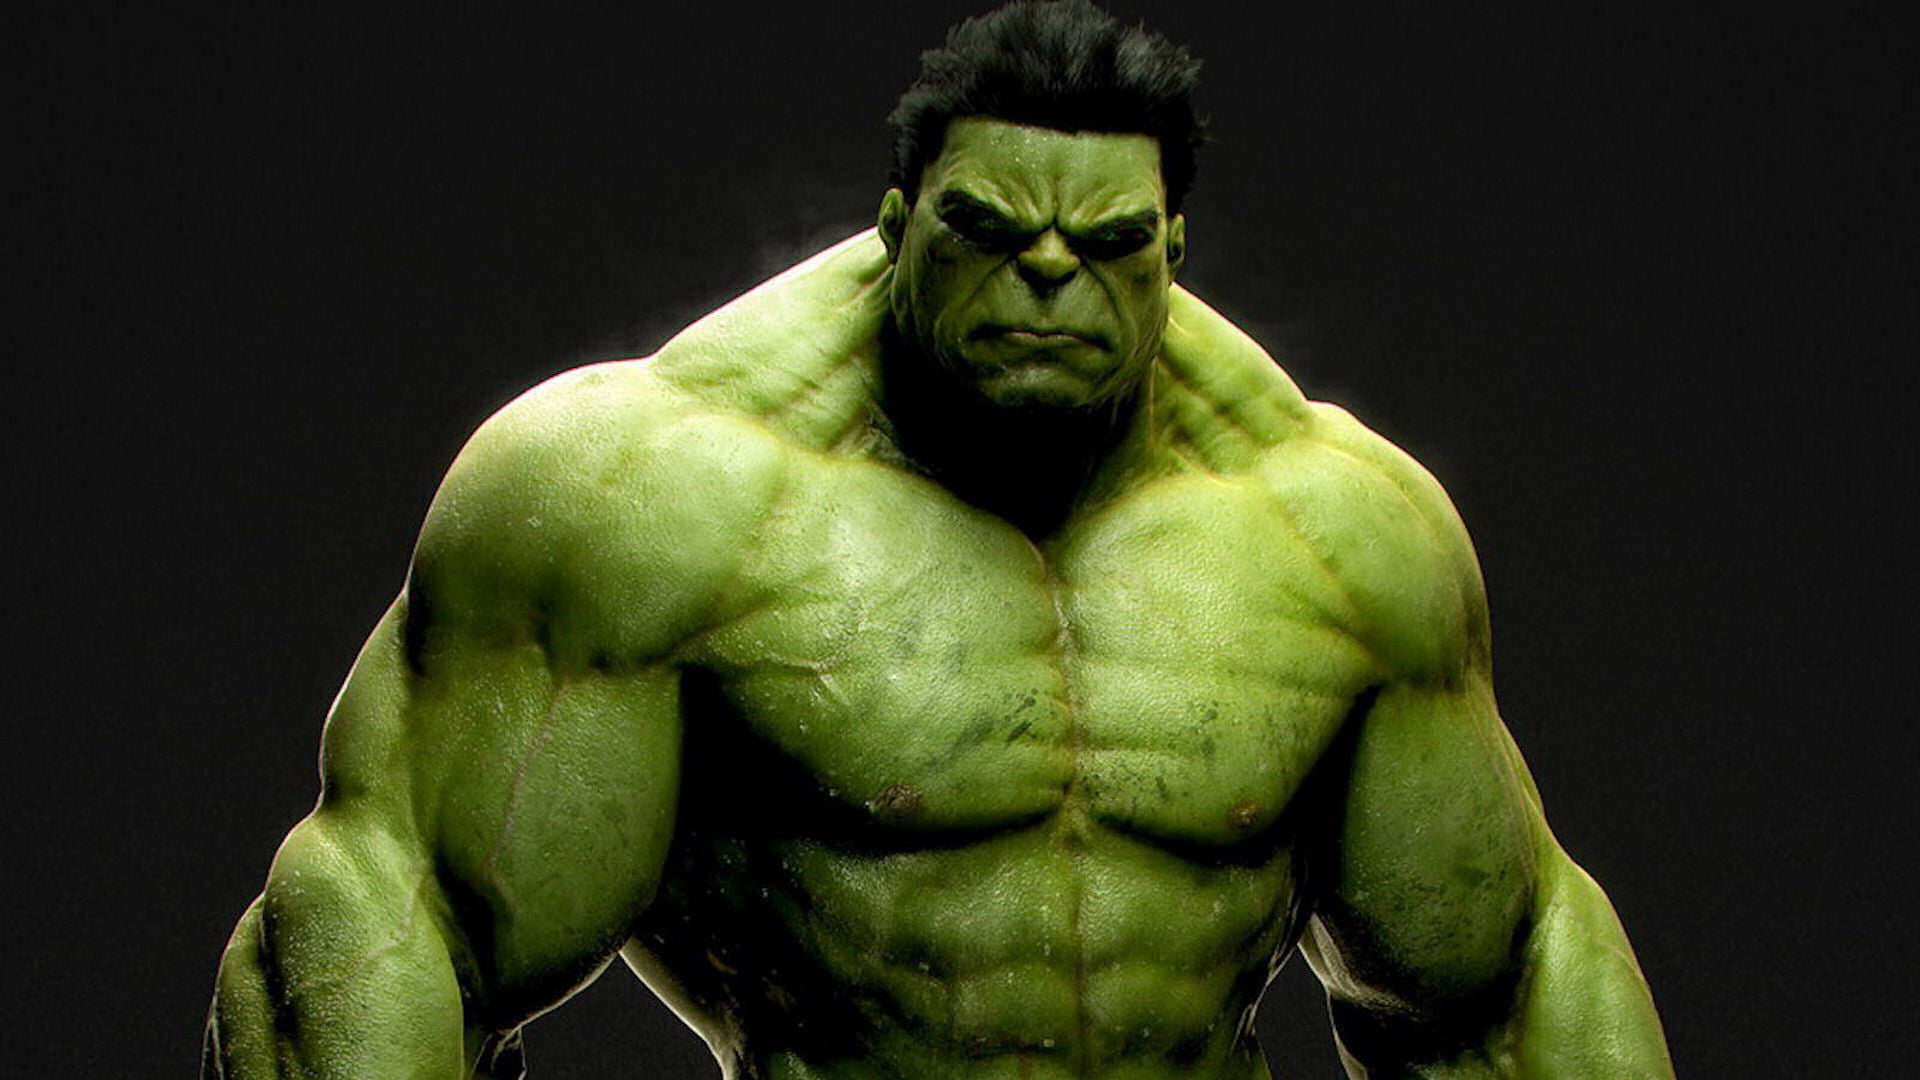 Marvel Hulk wallpaper, evil, green, Jock, incredible, muscular Build